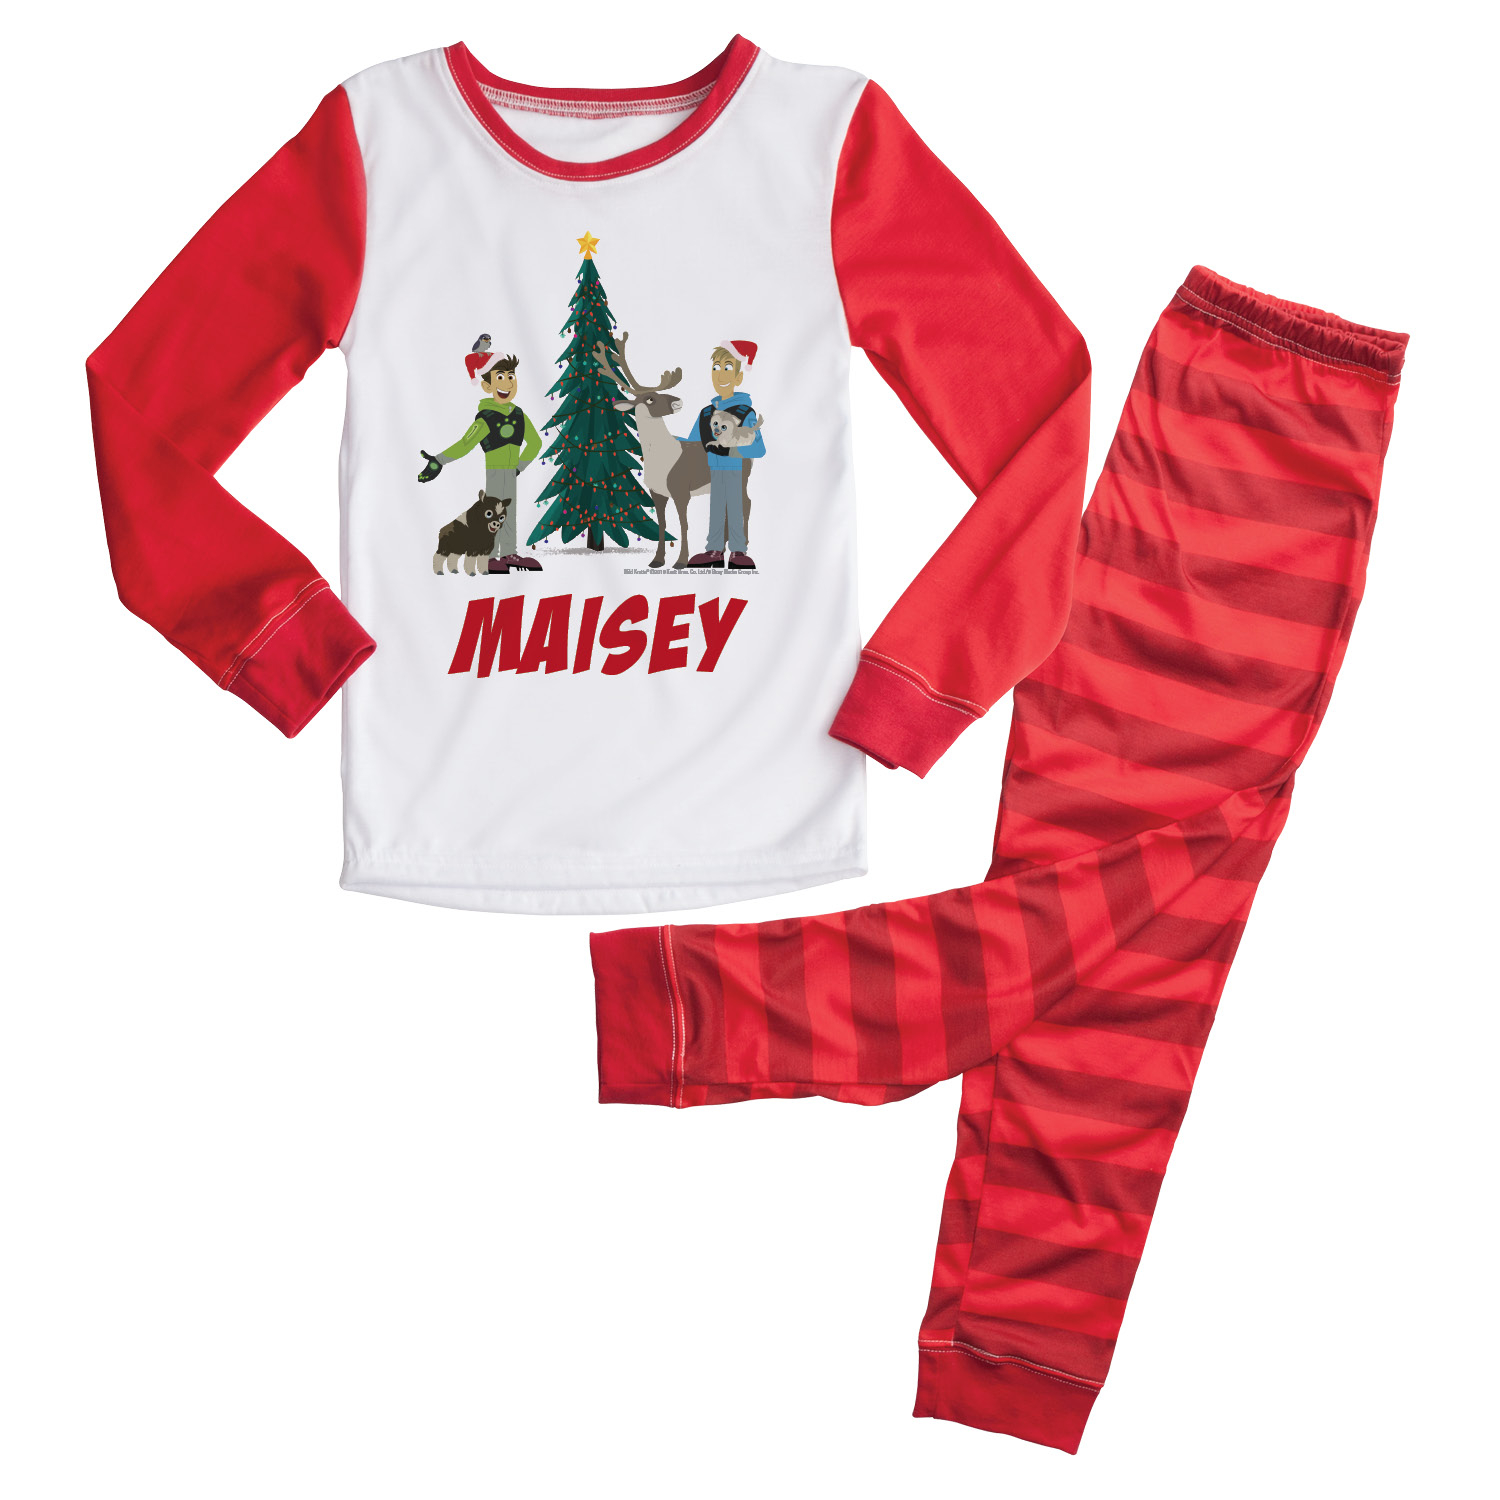 Wild Kratts Christmas Tree Personalized Pajamas